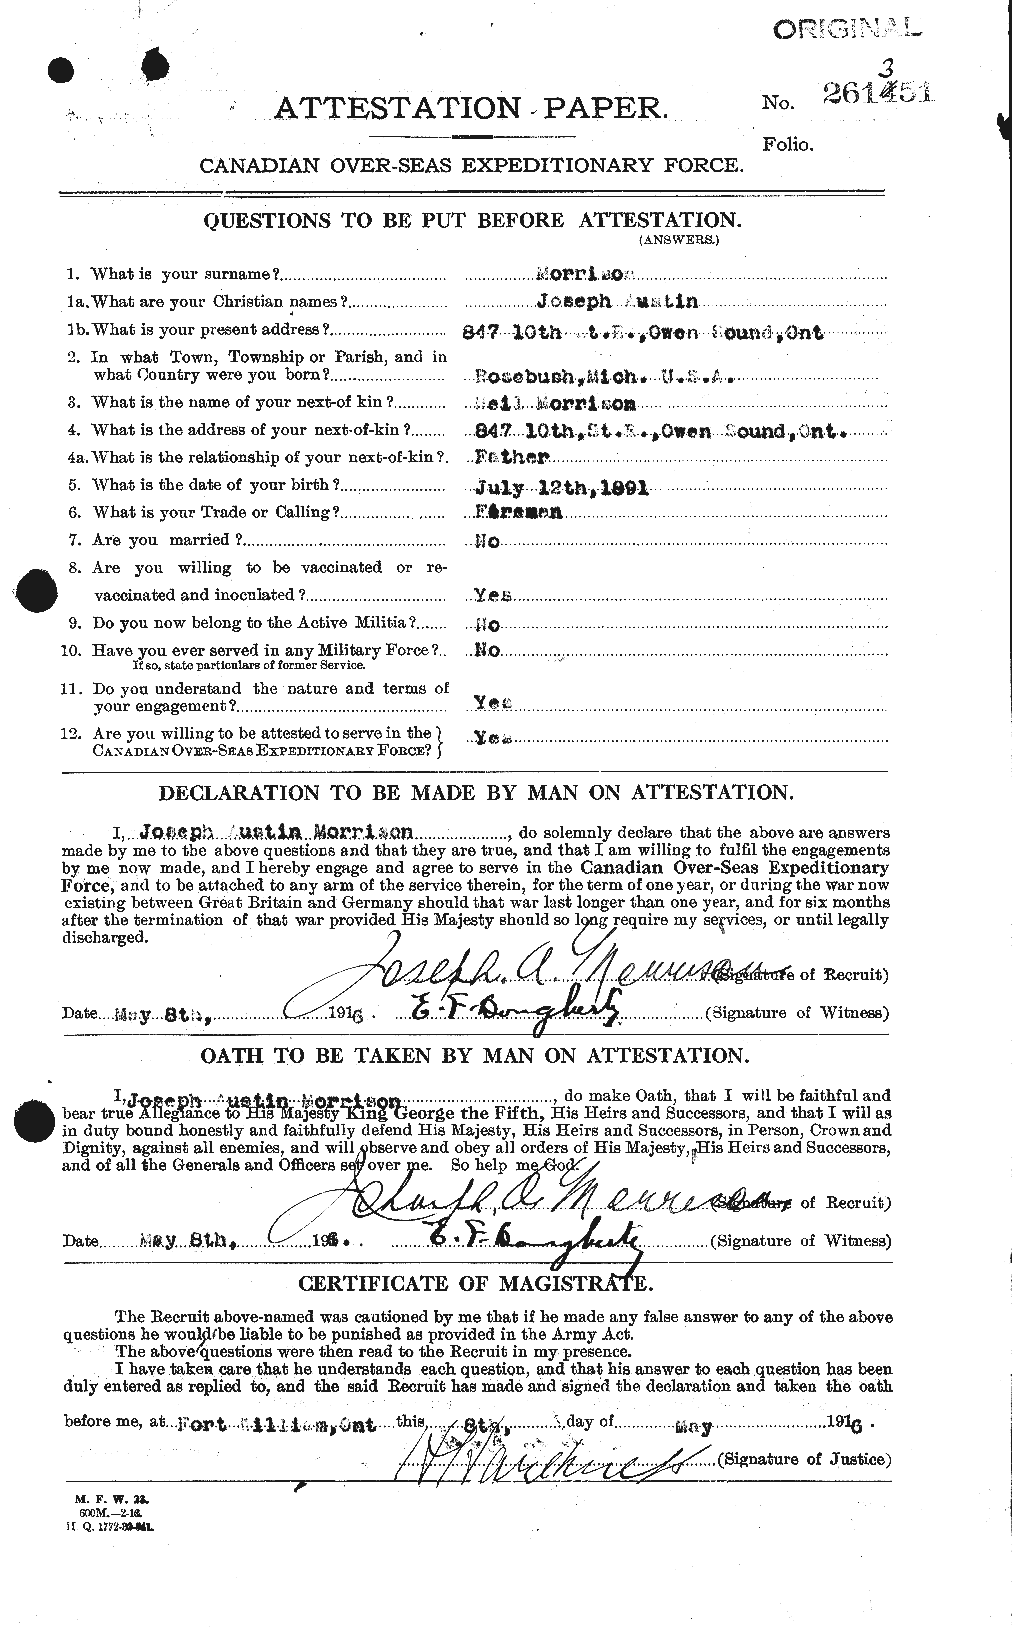 Dossiers du Personnel de la Première Guerre mondiale - CEC 507090a